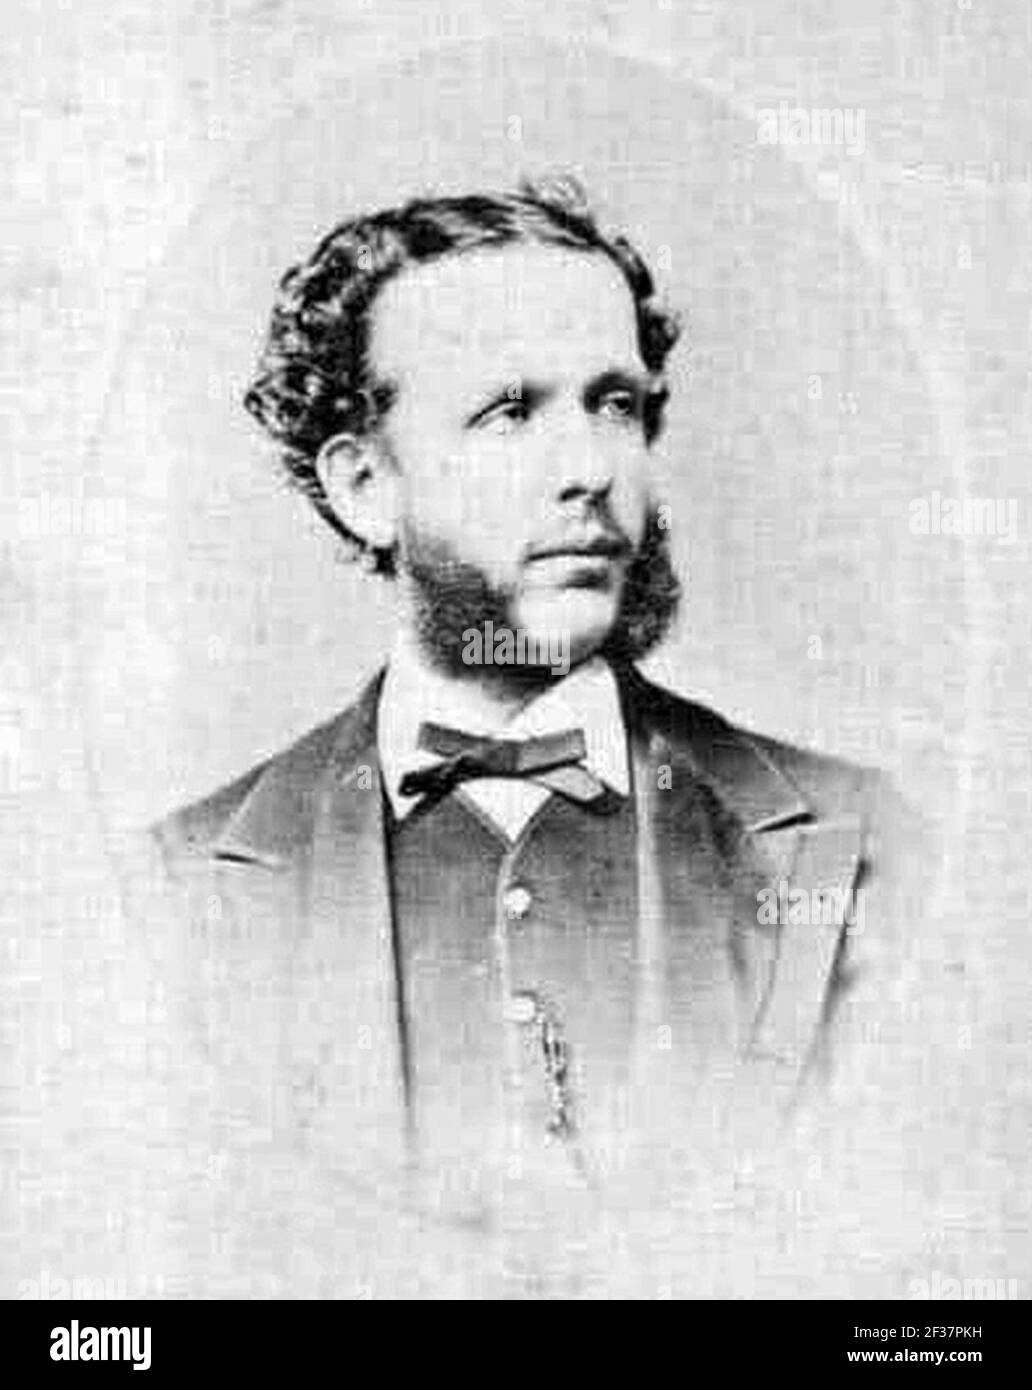 Prinz Ludwig von den beiden Sizilien, Graf von Trani um 1870 (anonymer Fotograf). Stockfoto